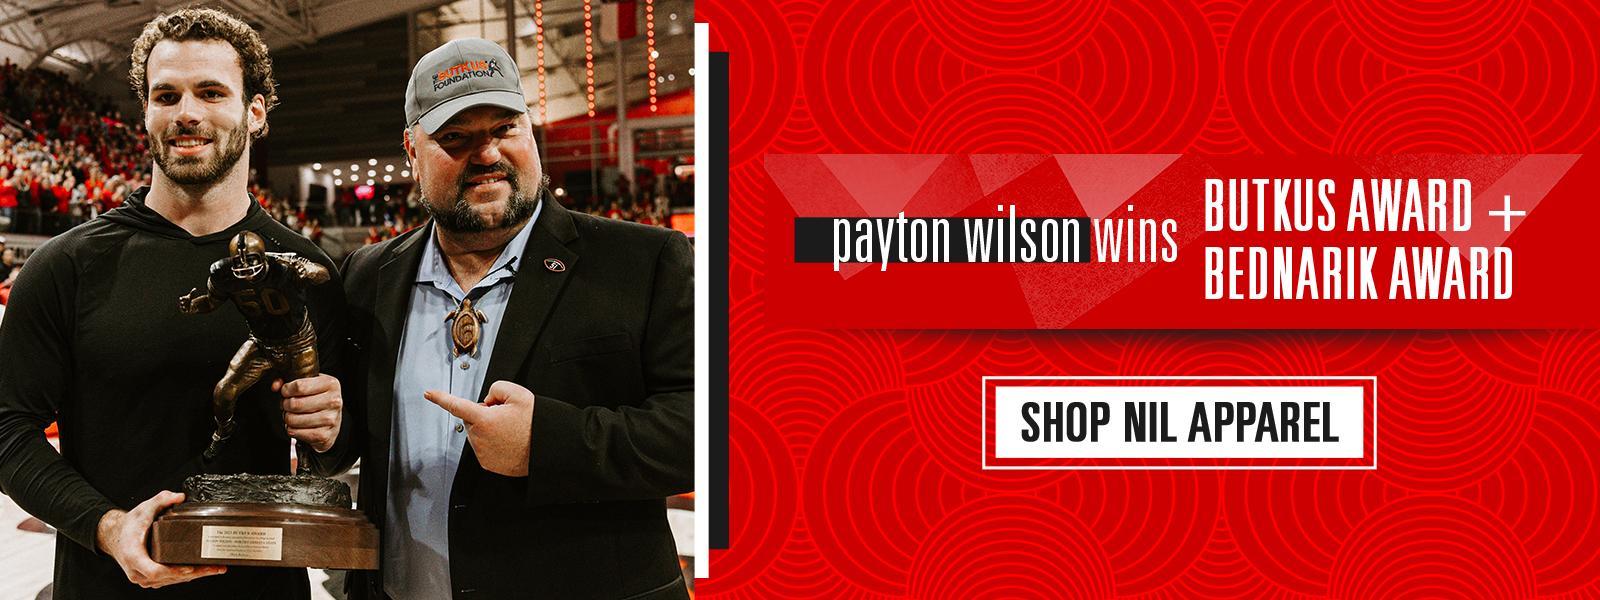 Payton Wilson - Award Winner